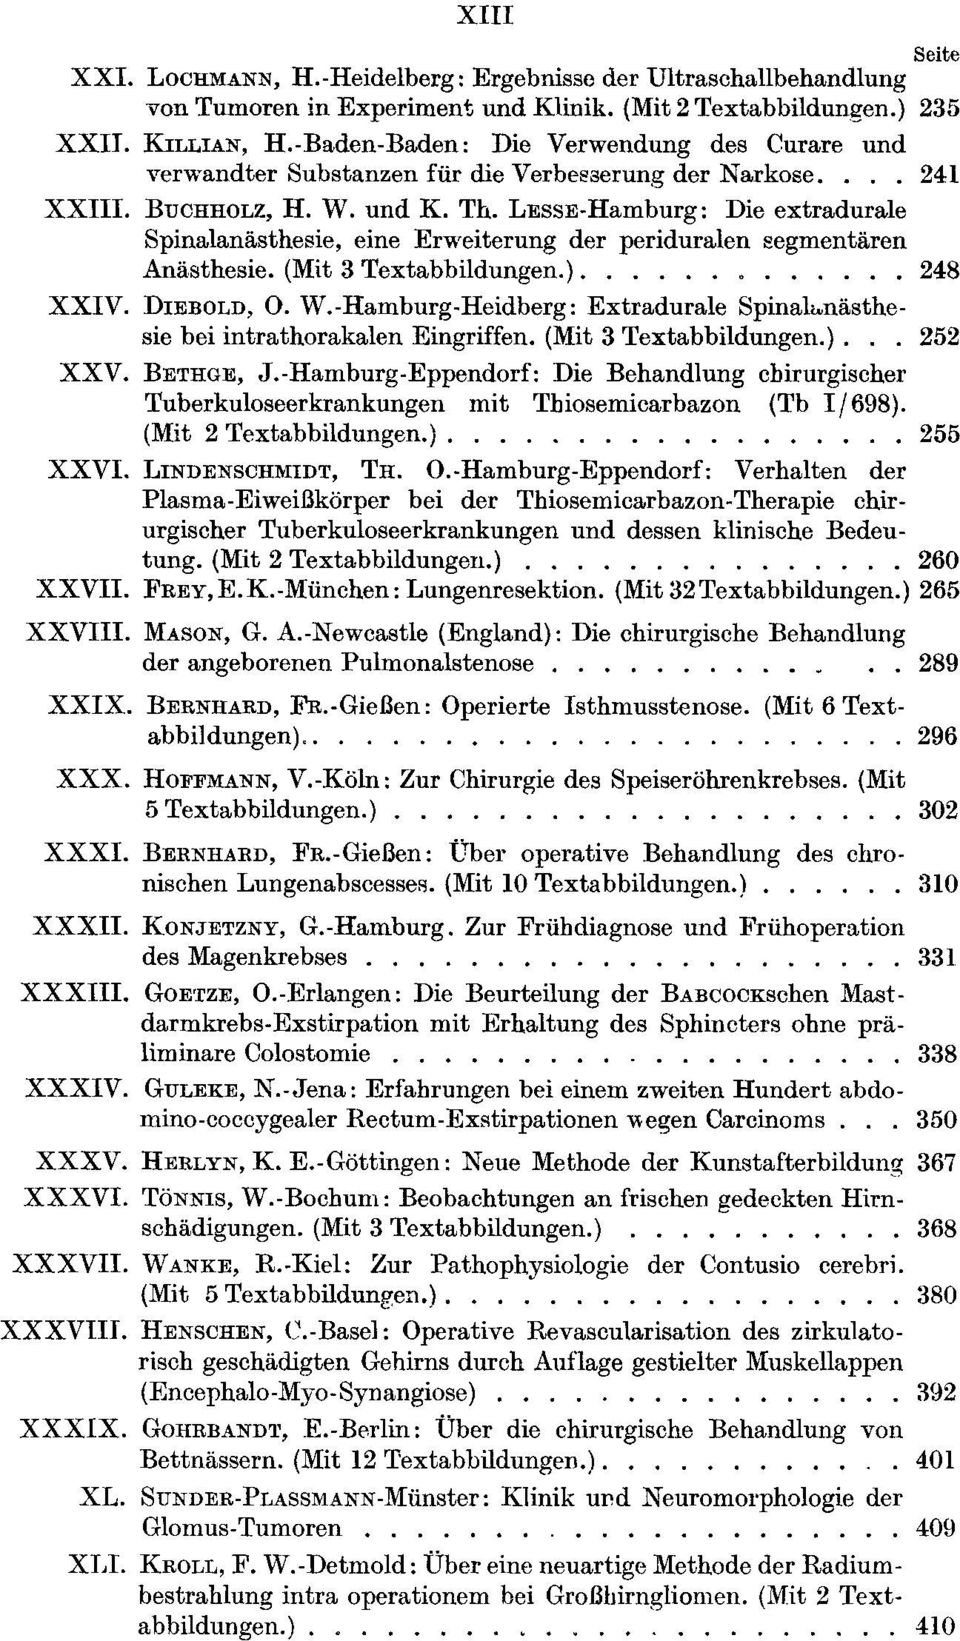 LESSE-Hamburg: Dieextradurale Spinalanästhesie, eine Erweiterung der periduralen eegmentären Anästhesie. (Mit 3 Textabbildungen.)............. 248 XXIV. DIEBOLD, 0. W.